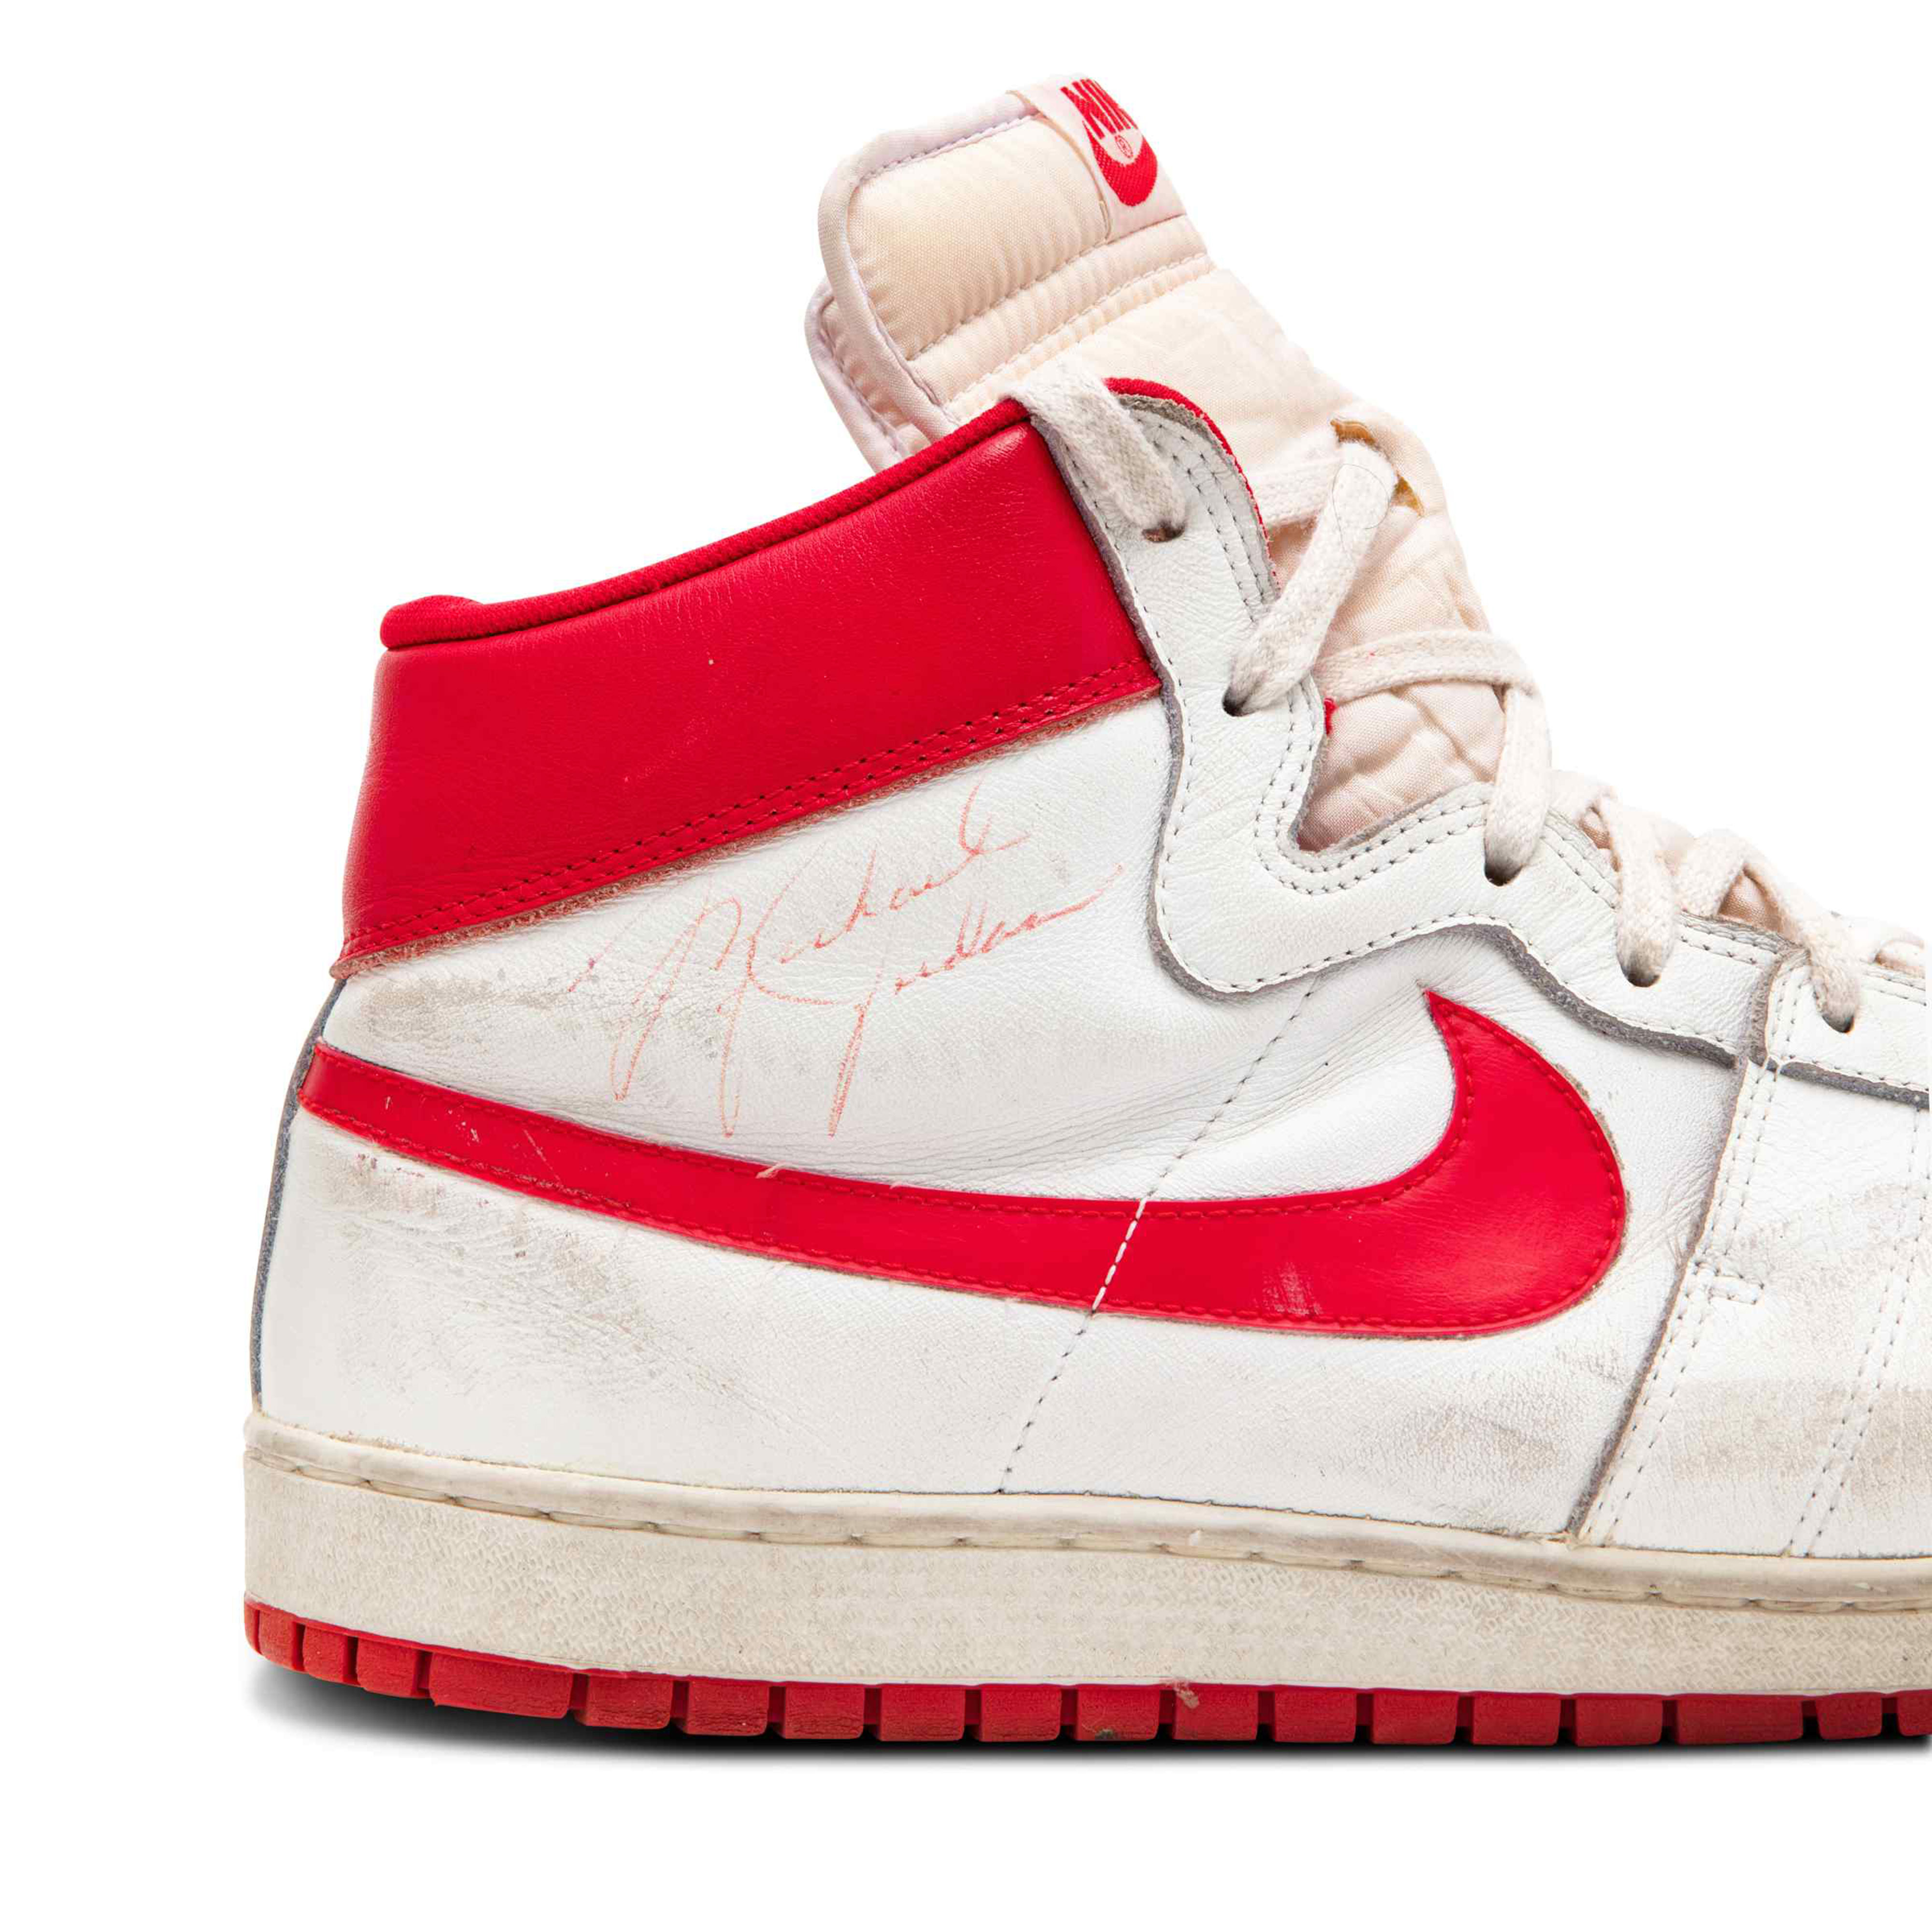 El principio Menstruación carne de vaca Michael Jordan's sneakers sell for record-breaking $1.47 million - CNN Style